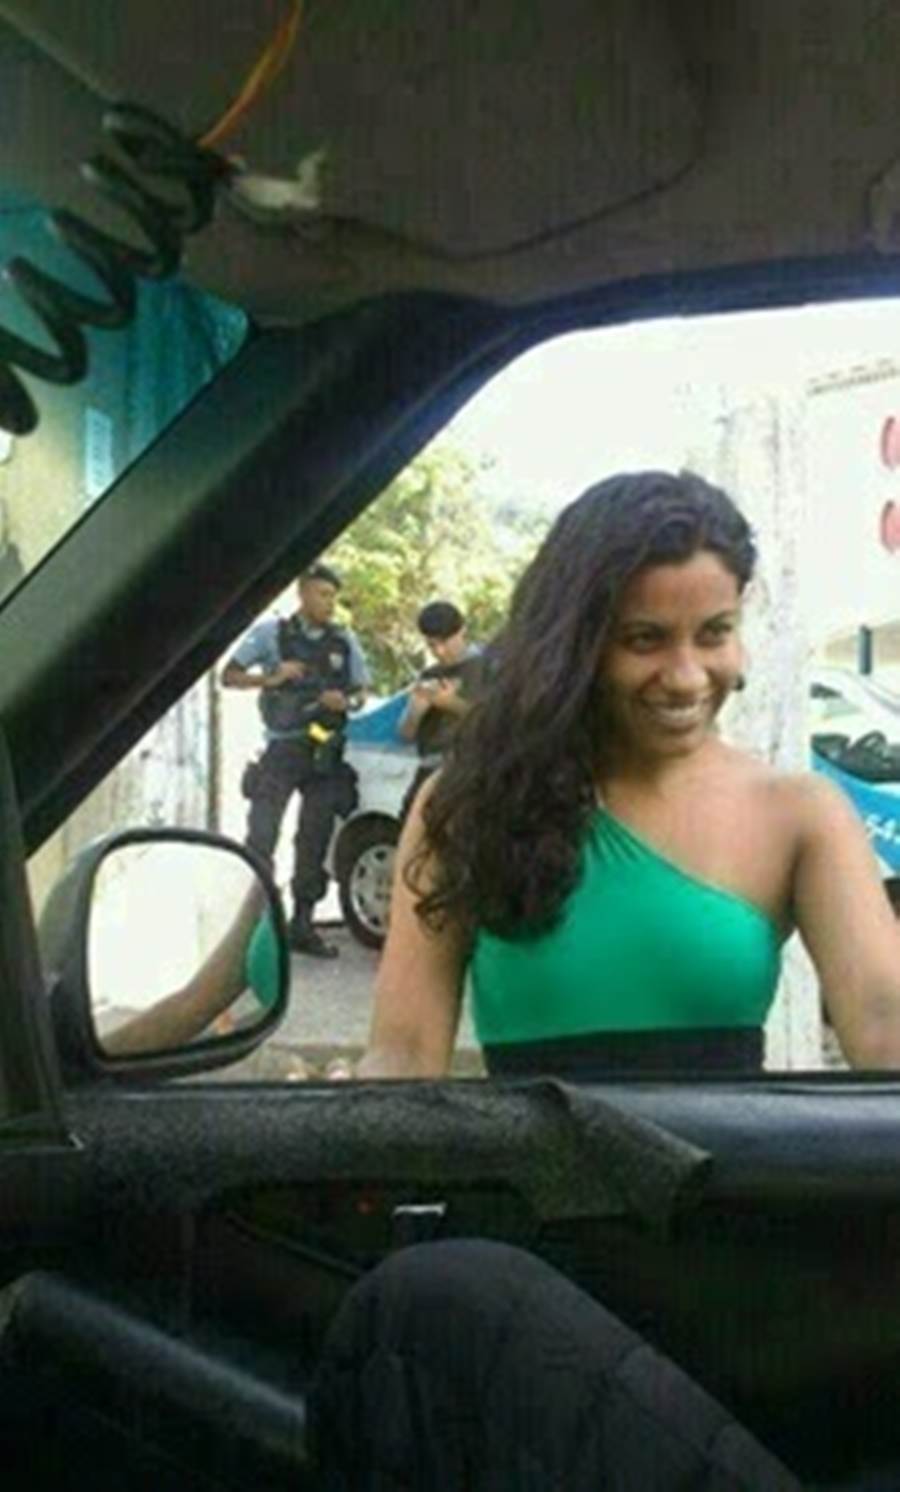 Fotos policial gostosa fazendo suruba Batalhão da PM do Rio de